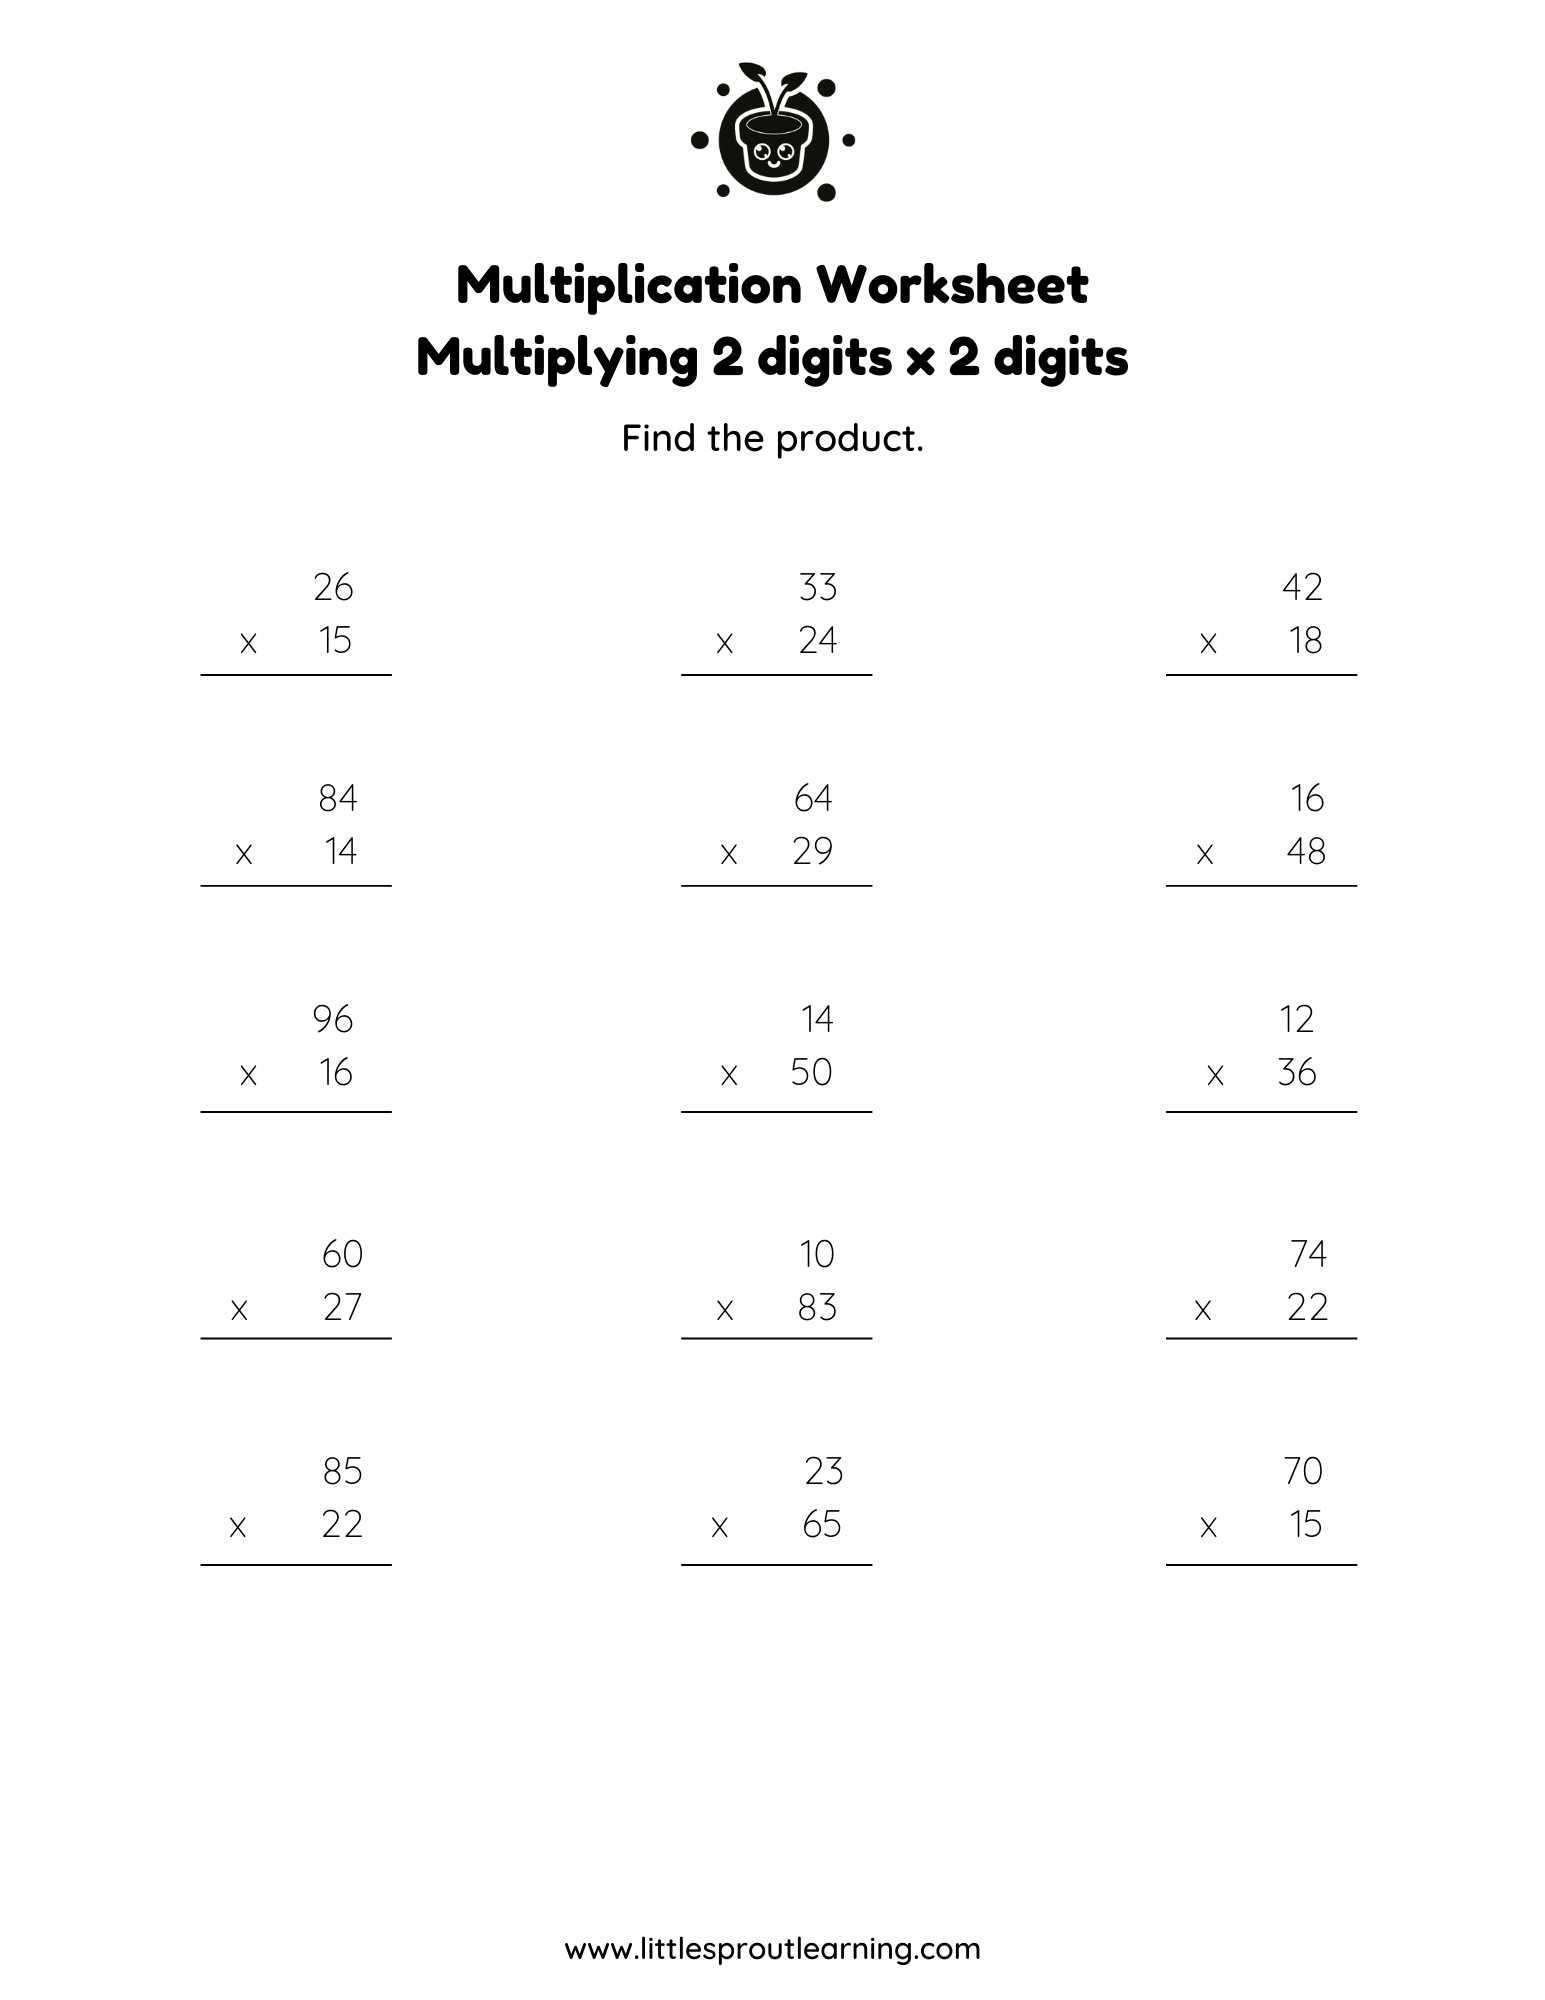 Multiplication Worksheet -Multiplying 2 Digit Numbers